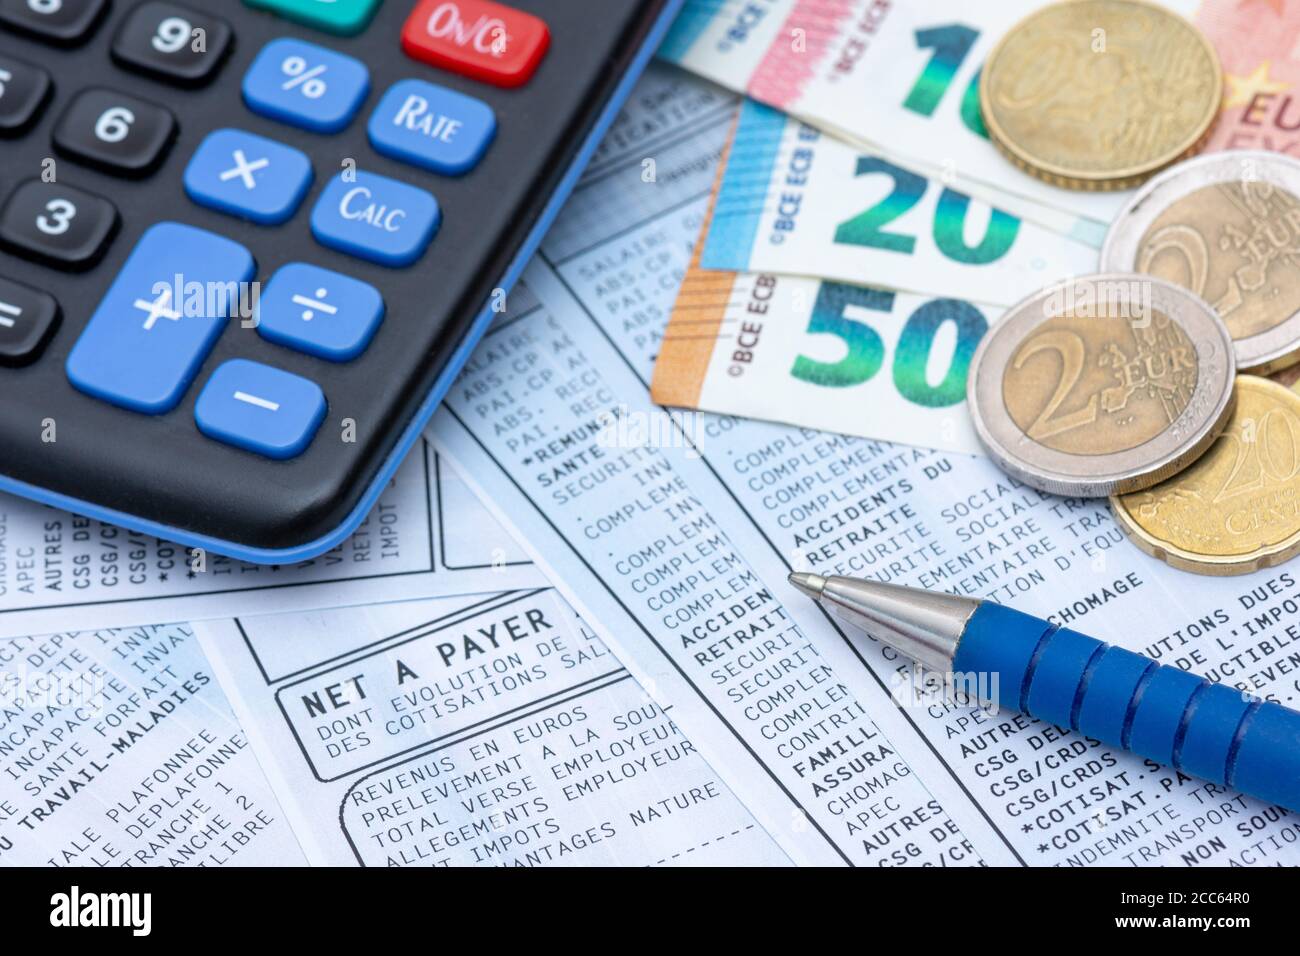 Französische Gehaltsabrechnung mit Sozialabgaben und Einkommensteuerabzug,  zusammen mit einem Rechner, einem Stift und Euro-Münzen Stockfotografie -  Alamy